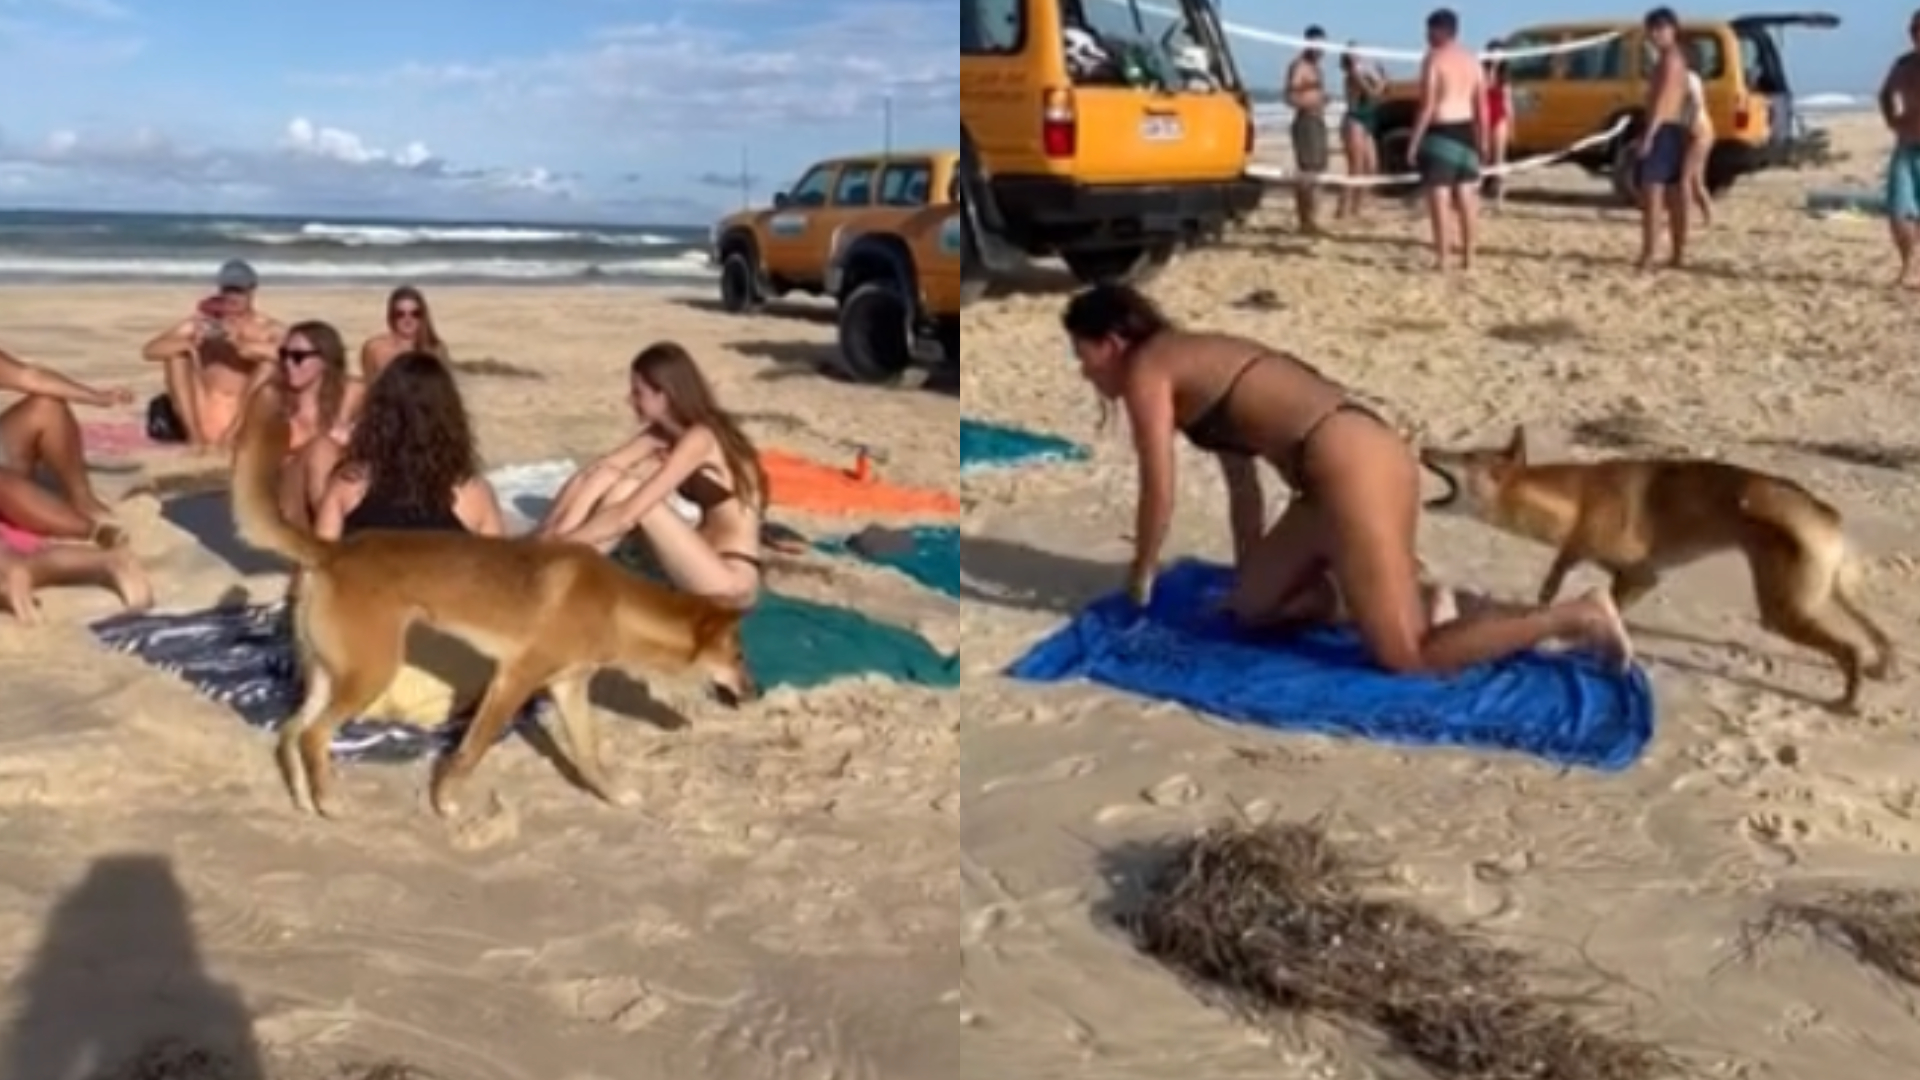 Turista recebe mordida de dingo no bumbum e vídeo viraliza; autoridades revelam desfecho do caso